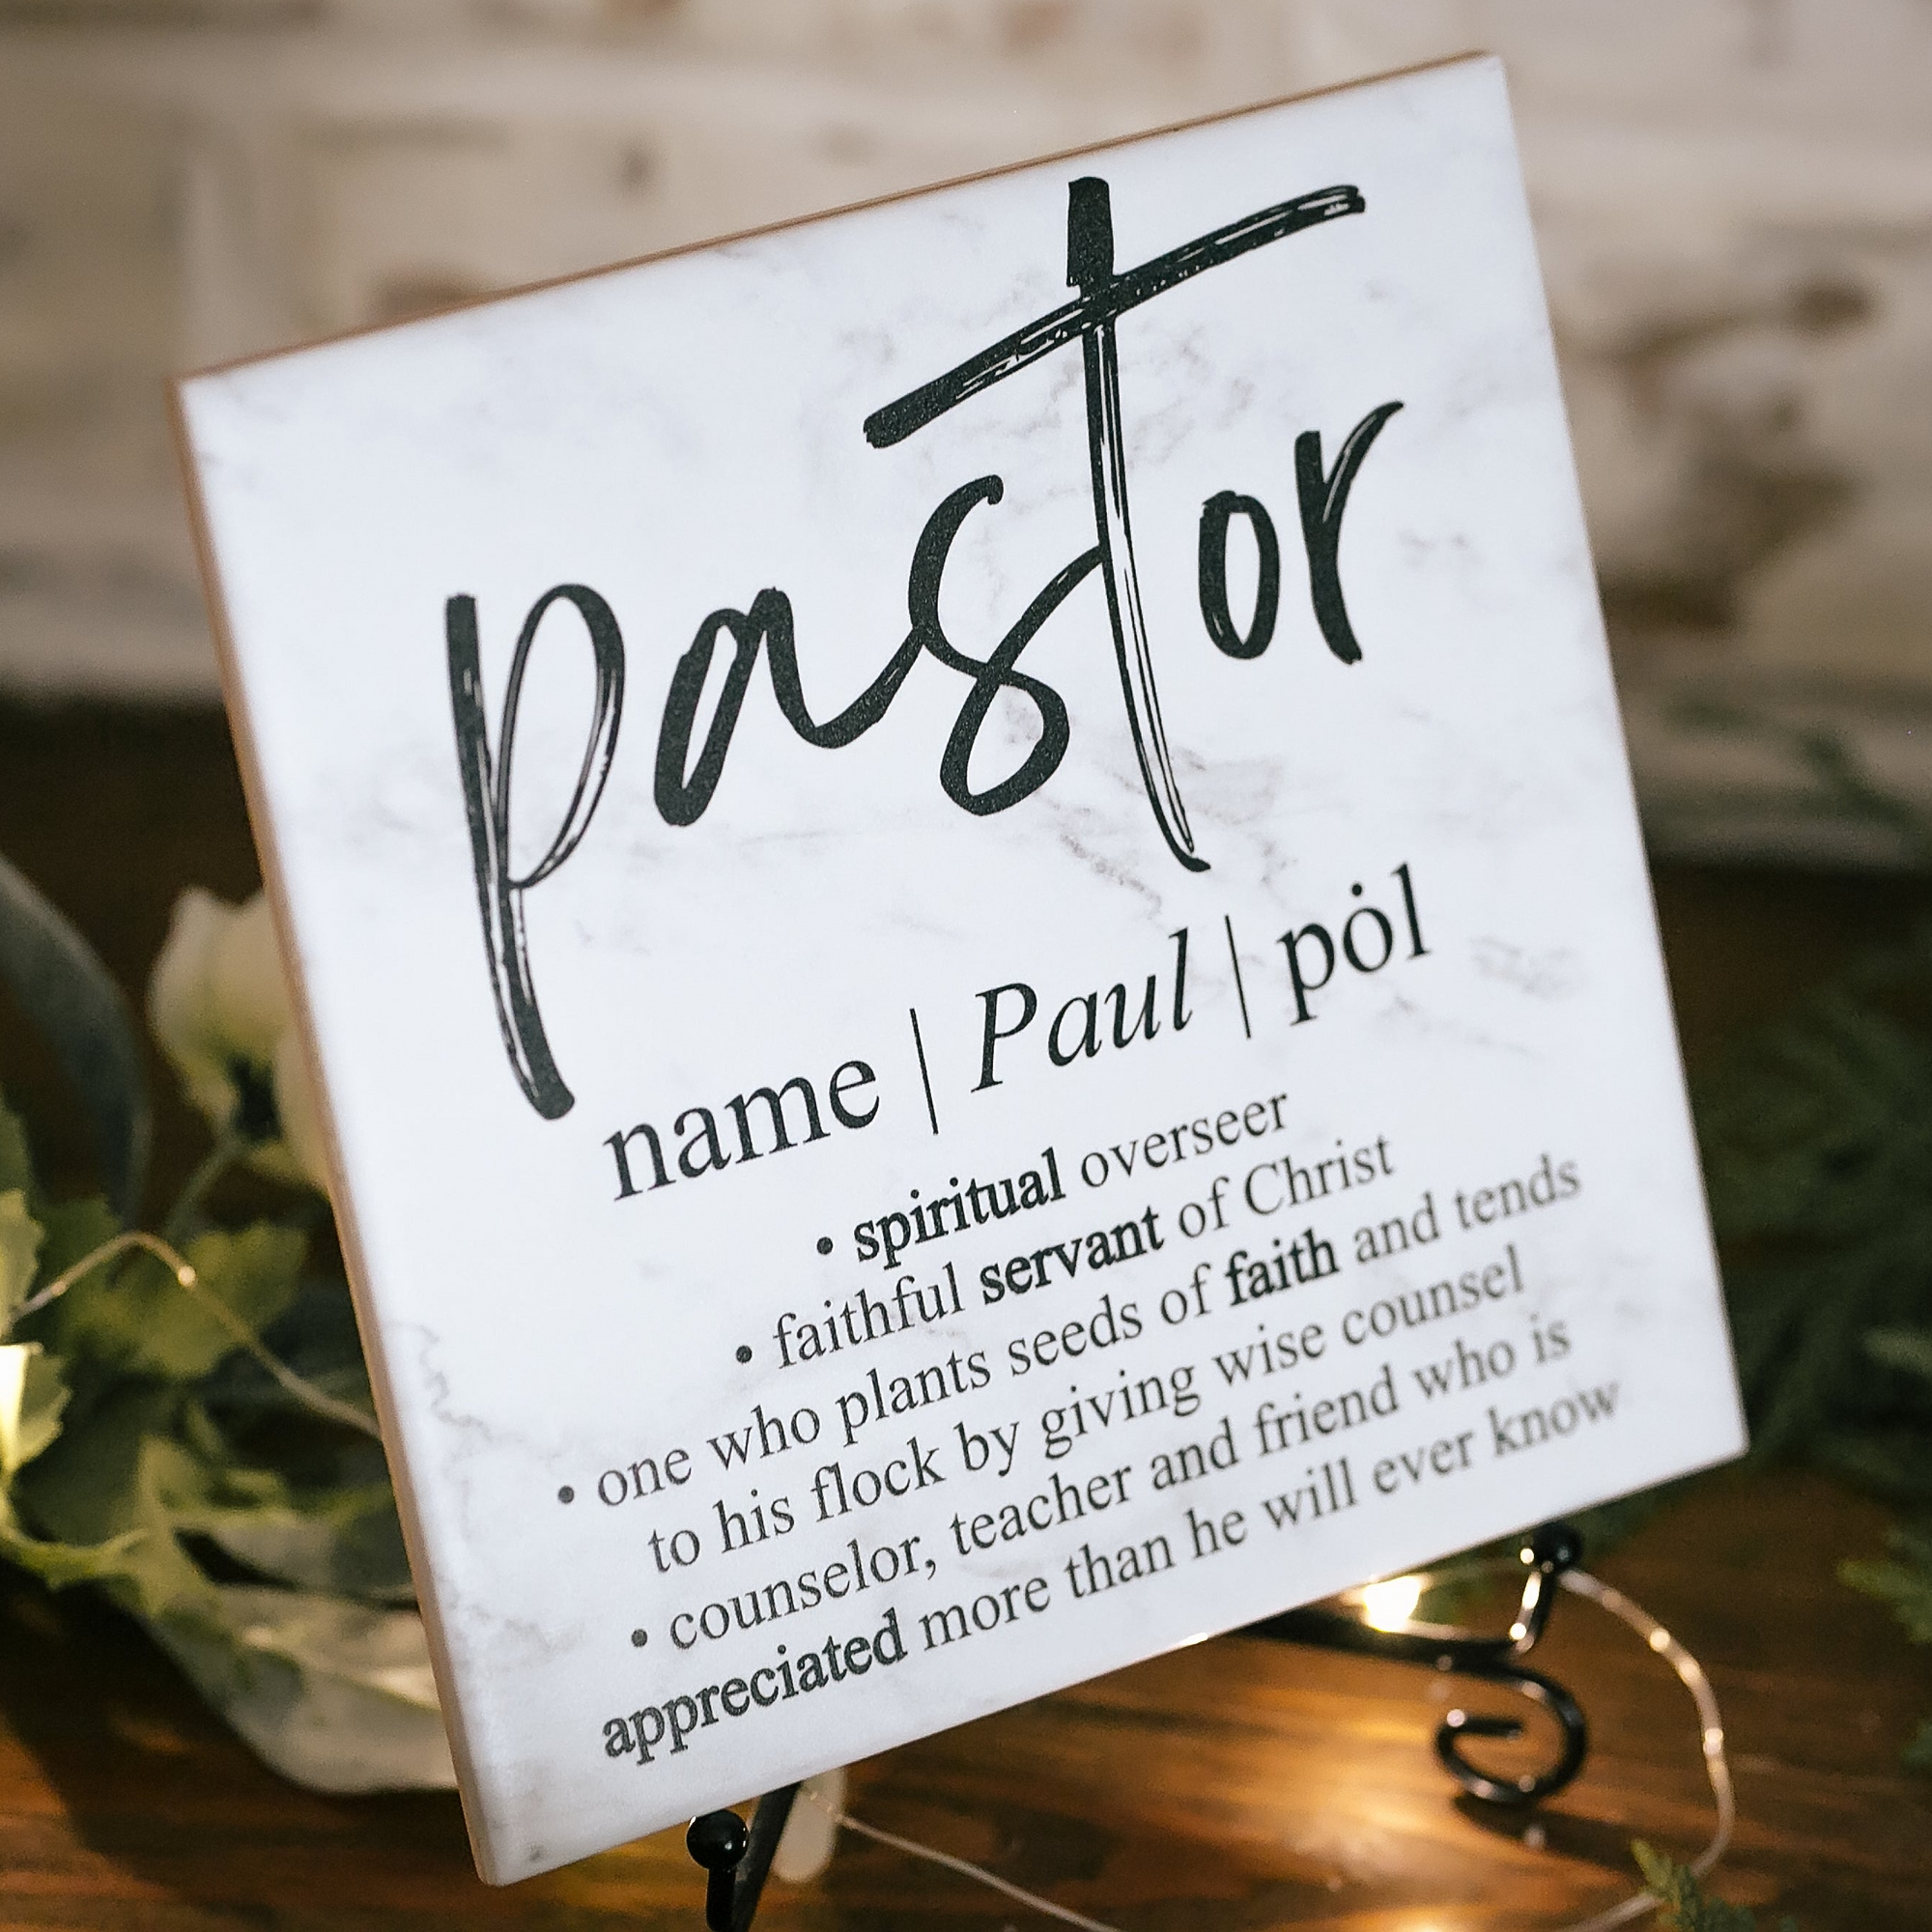 Pastor Dictionary Definition Quote Art Tile Plaque